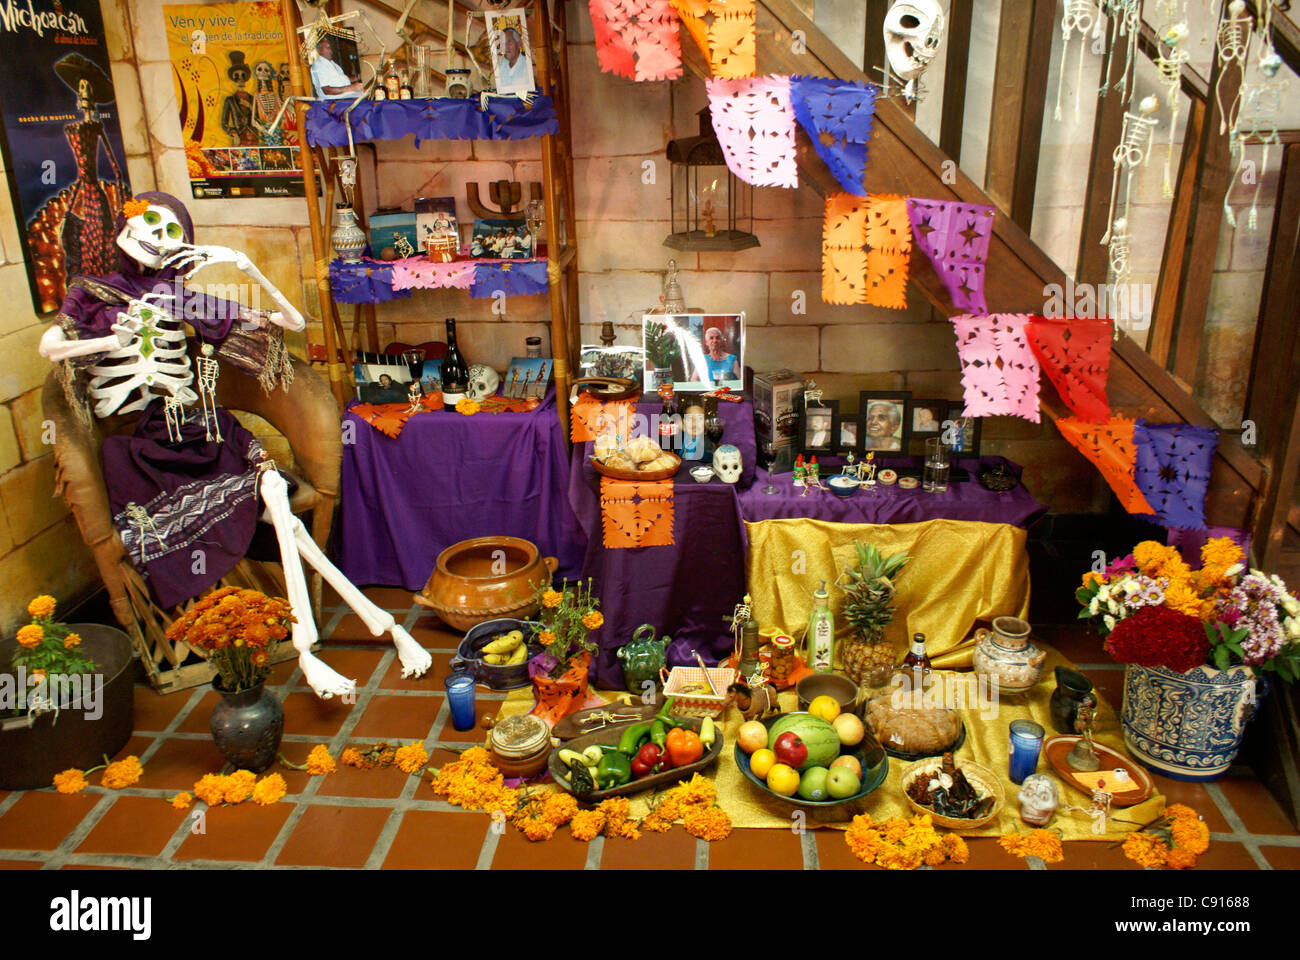 Décoré le Jour des Morts mexicain ou Dia de los muertos autels, Mazatlan, Sinaloa, Mexique Banque D'Images